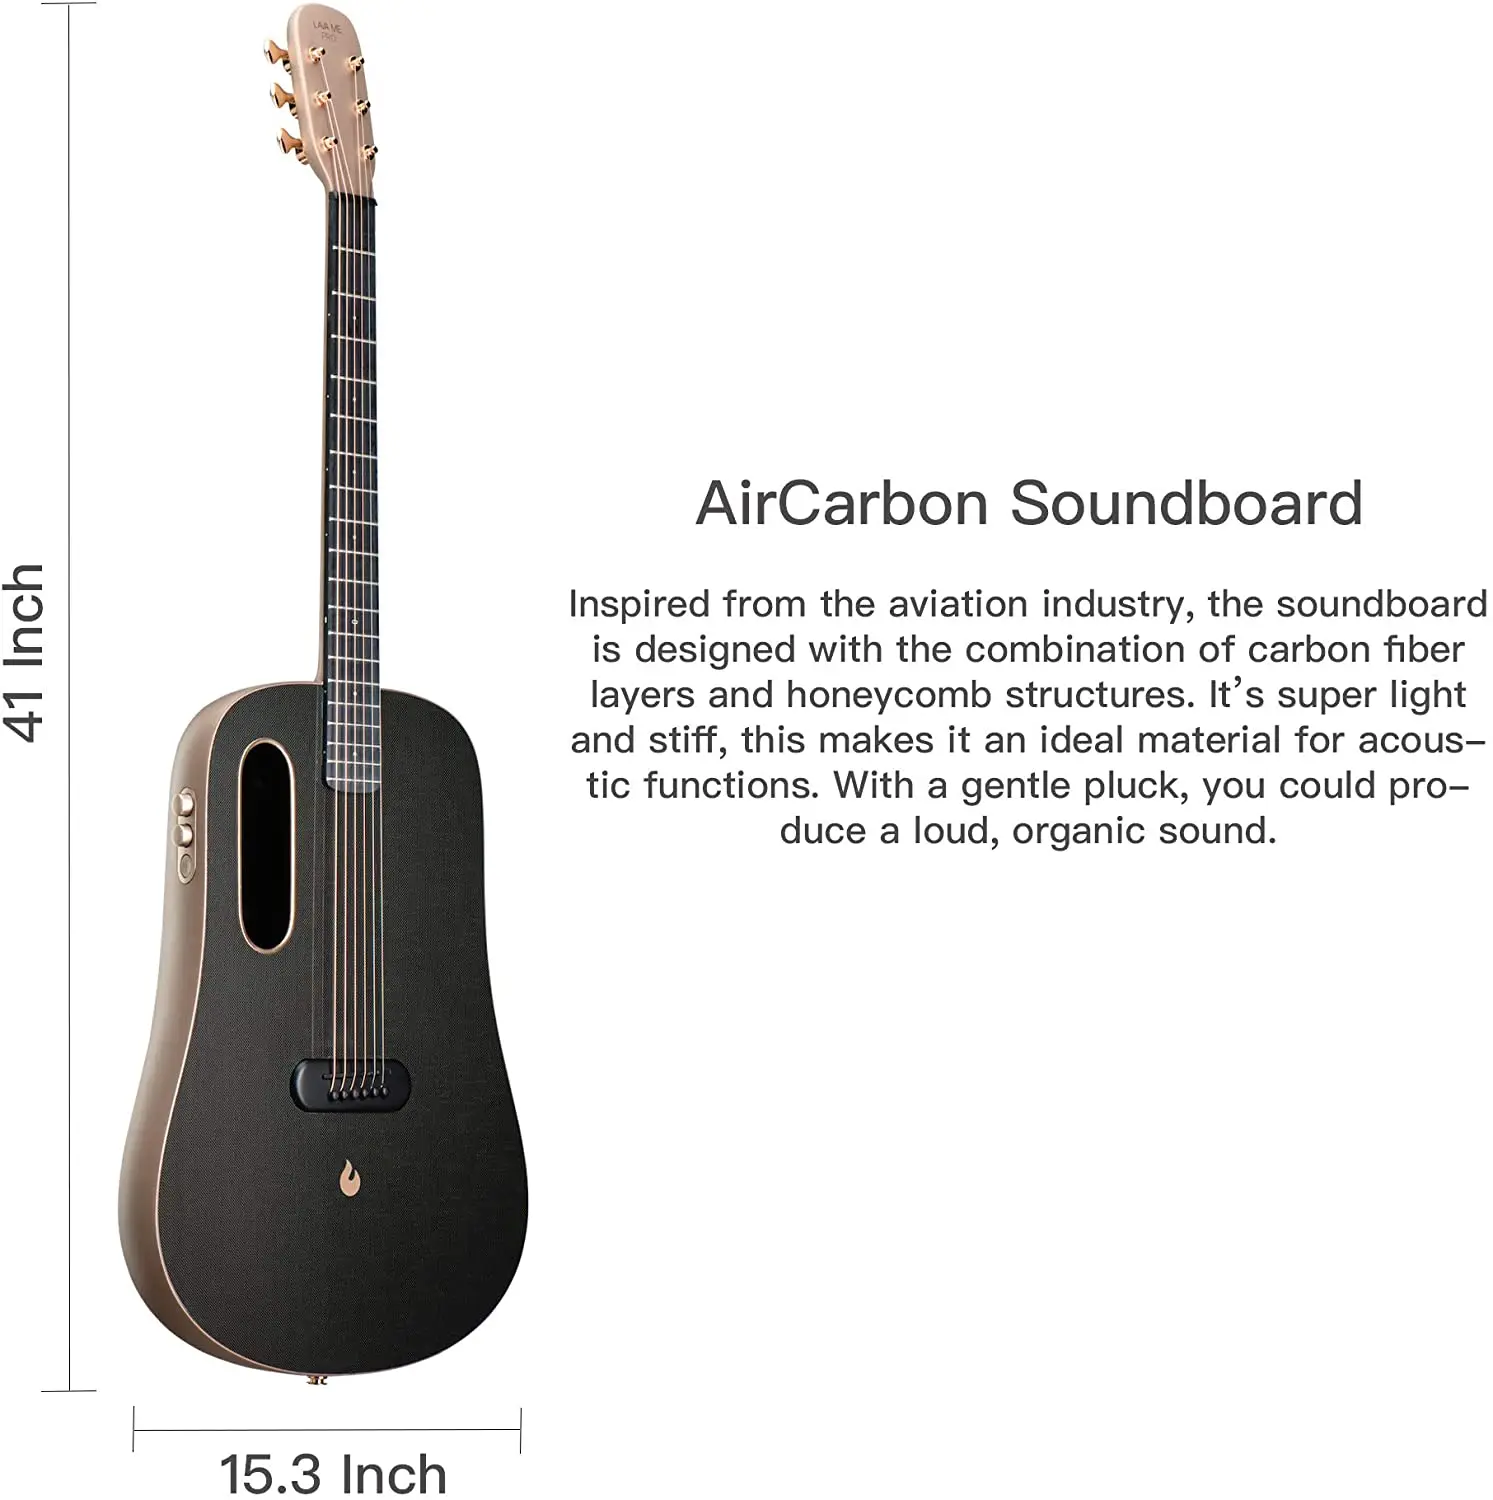 LAVA ME 2 Guitarra de fibra de carbon con efectos Guitarra Acústica Eléctrica de Viaje con bolsa Picks y Cable de carga FreeBoost, Azul, 36 Inch 